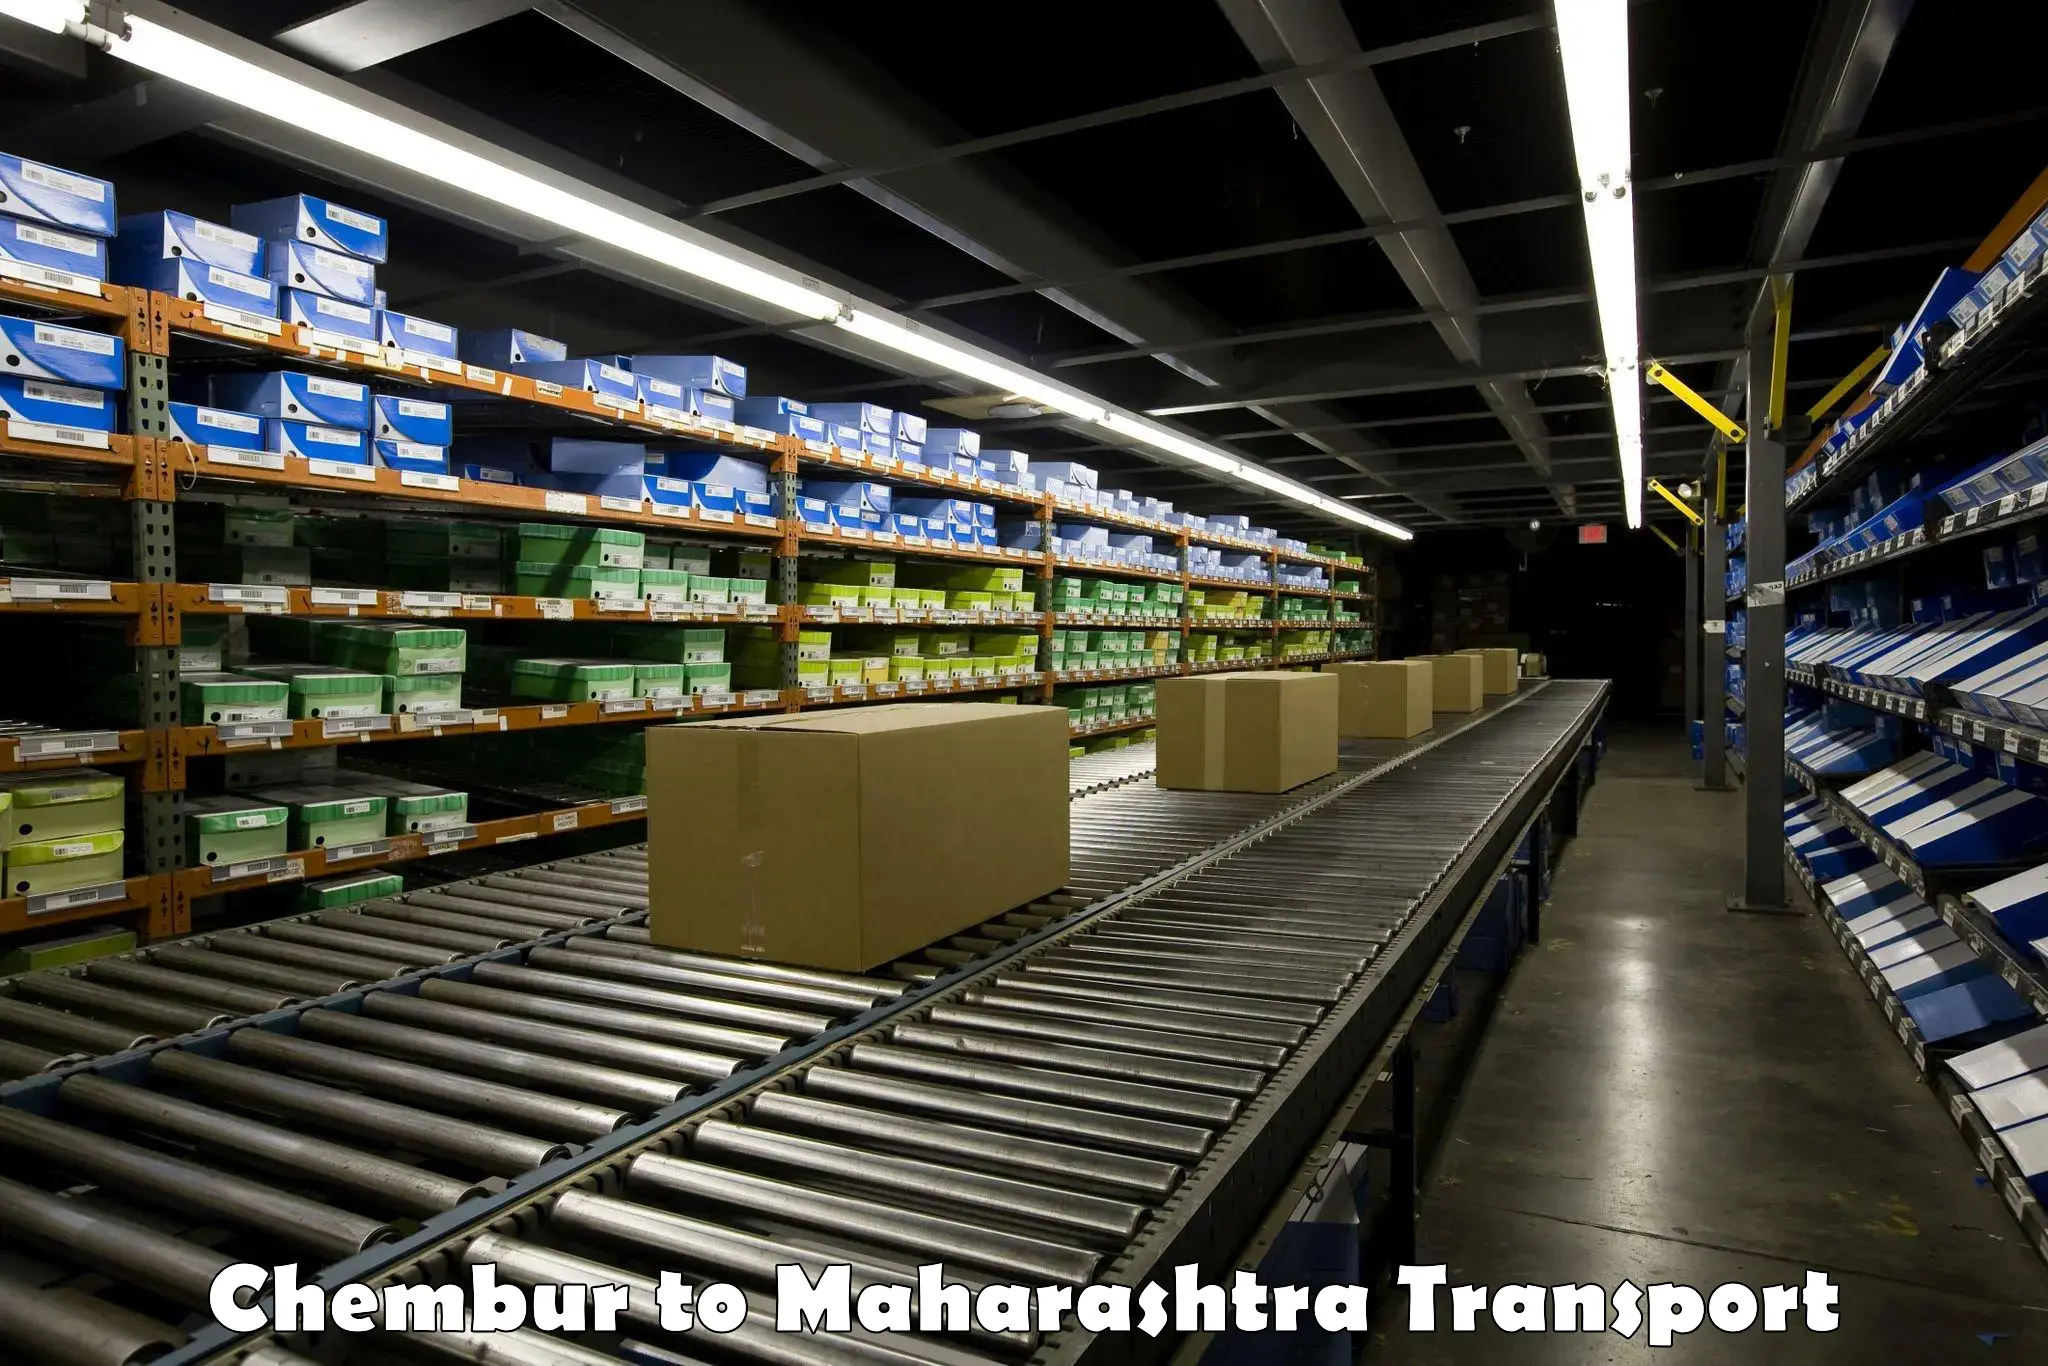 Truck transport companies in India Chembur to Vasmat